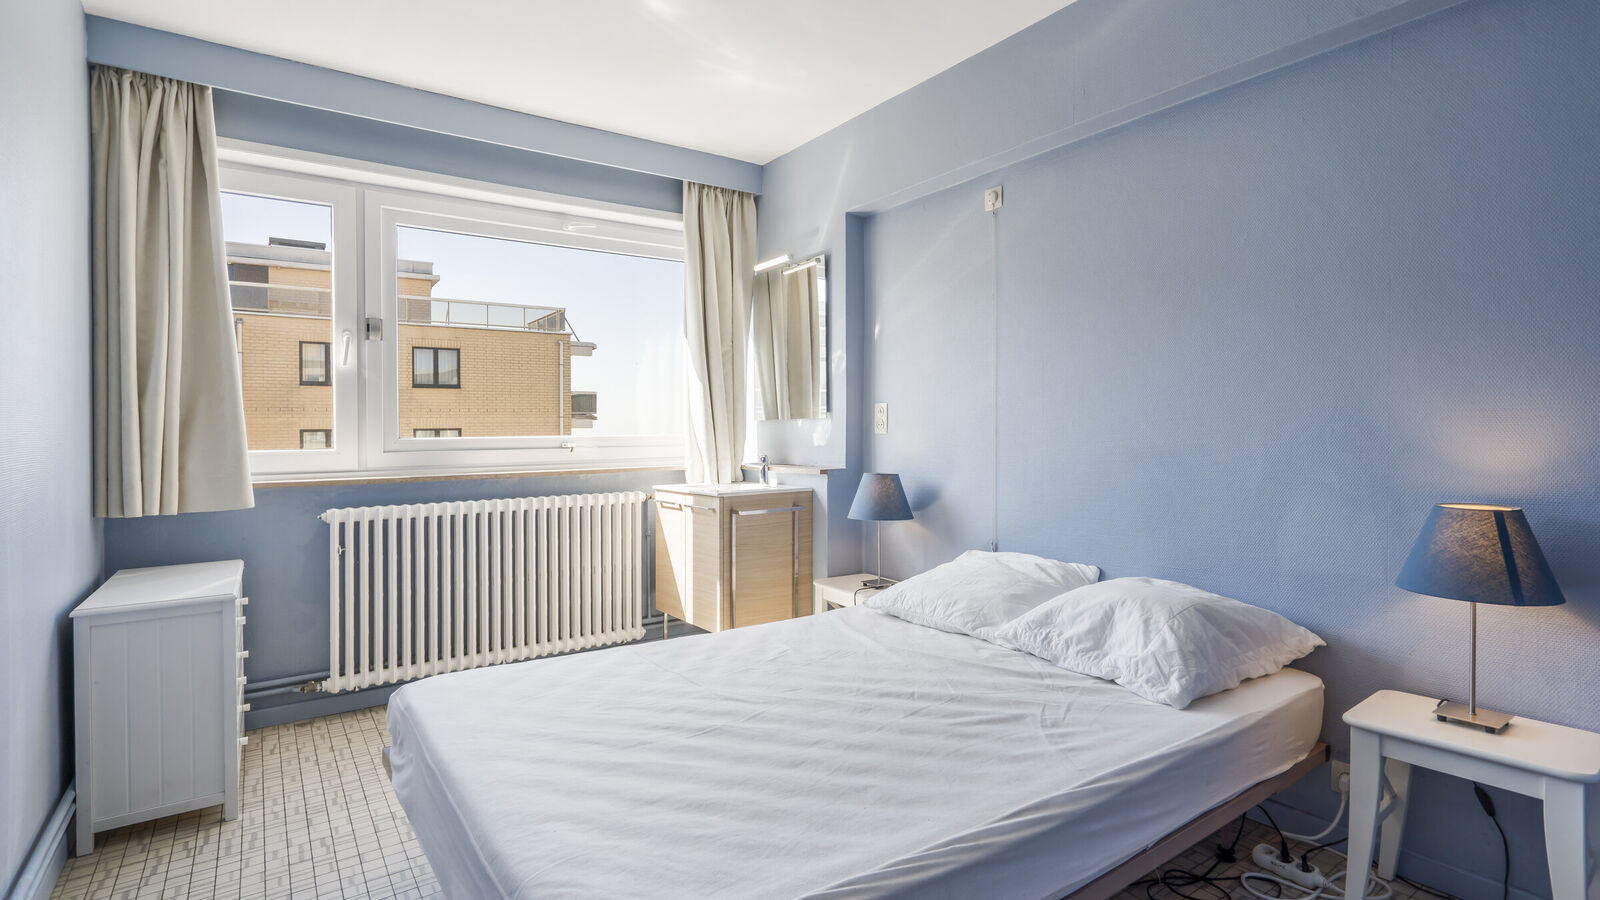 App. 4 bedrooms in Koksijde